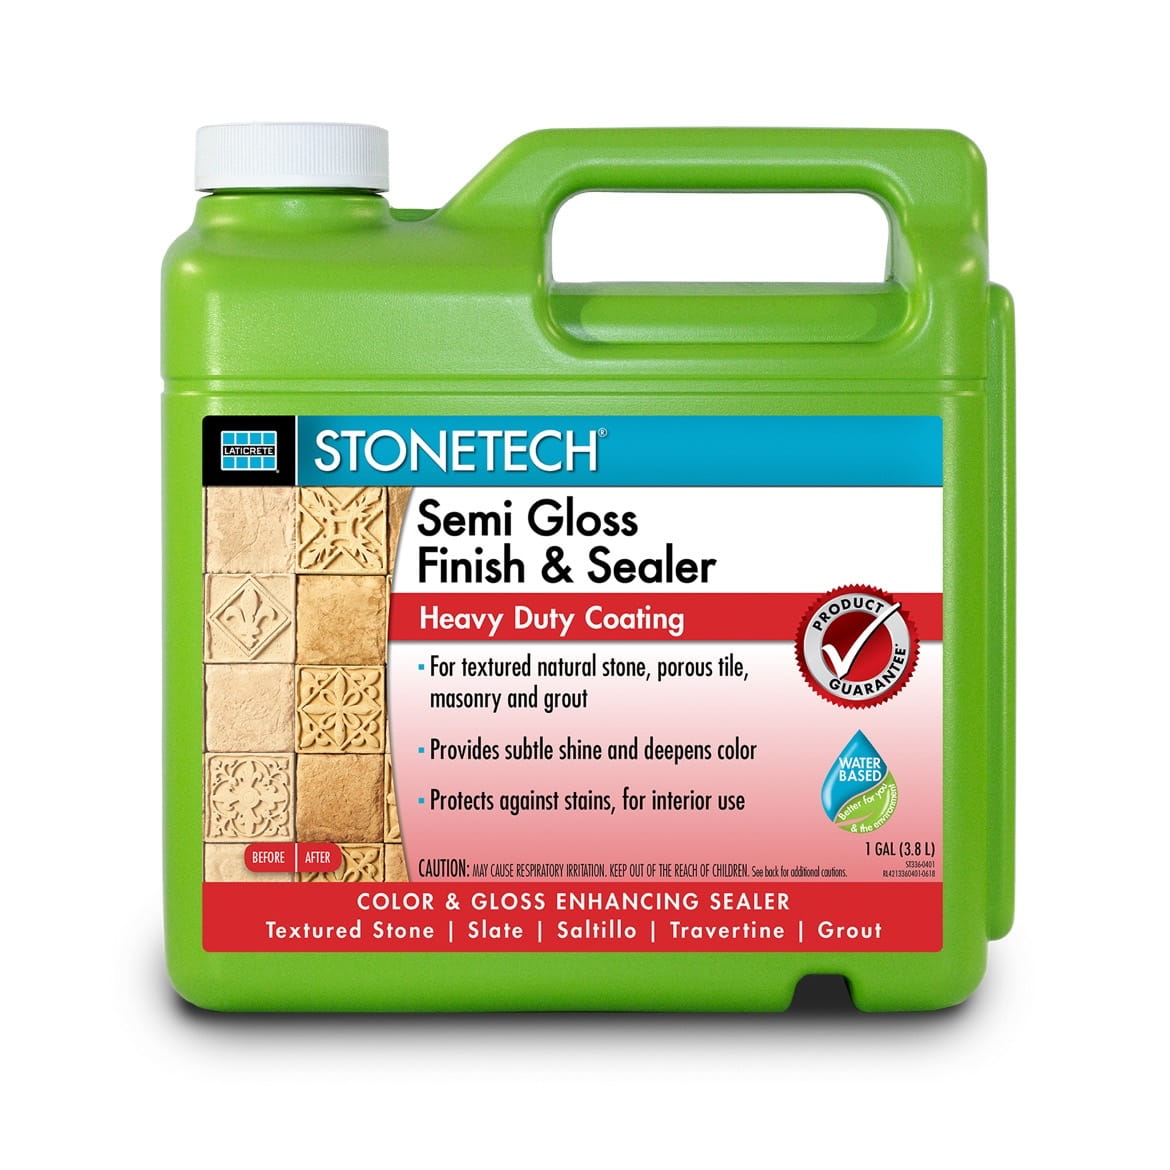 Stonetech semi gloss finishing sealer